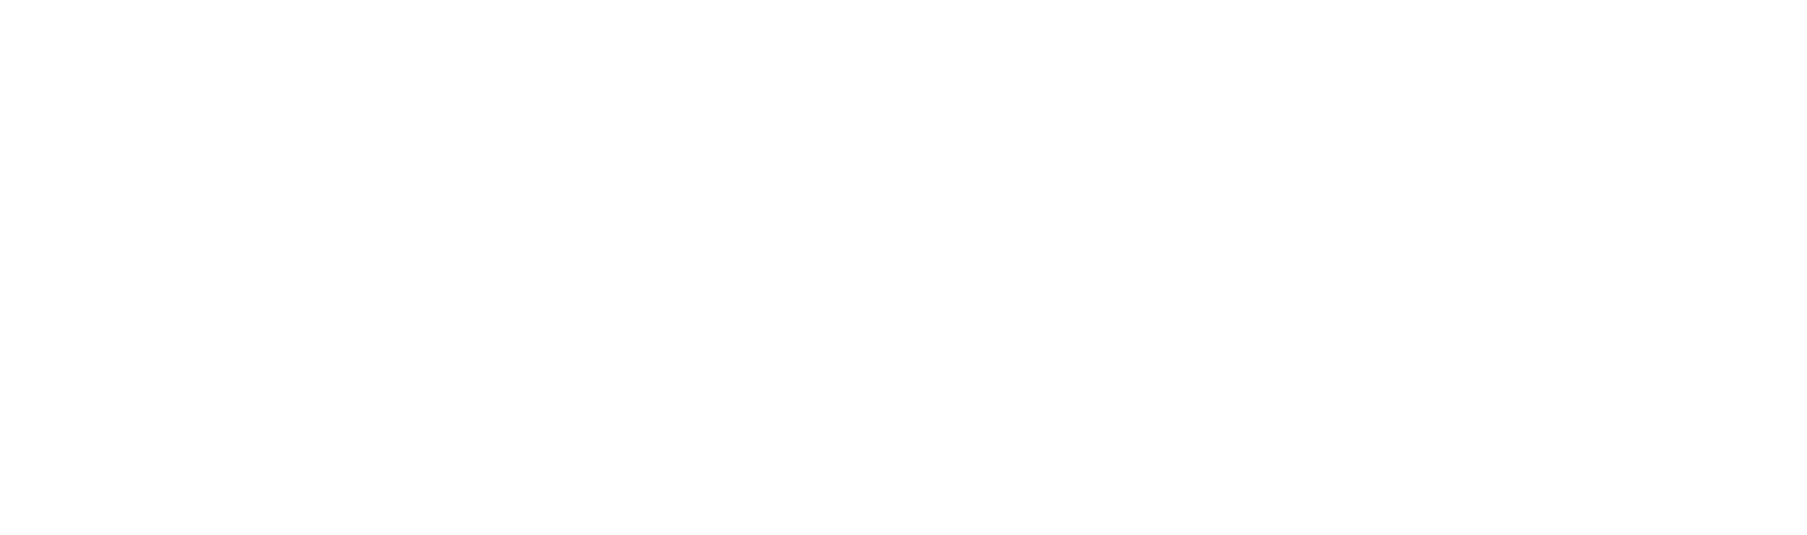 Ruckus-1